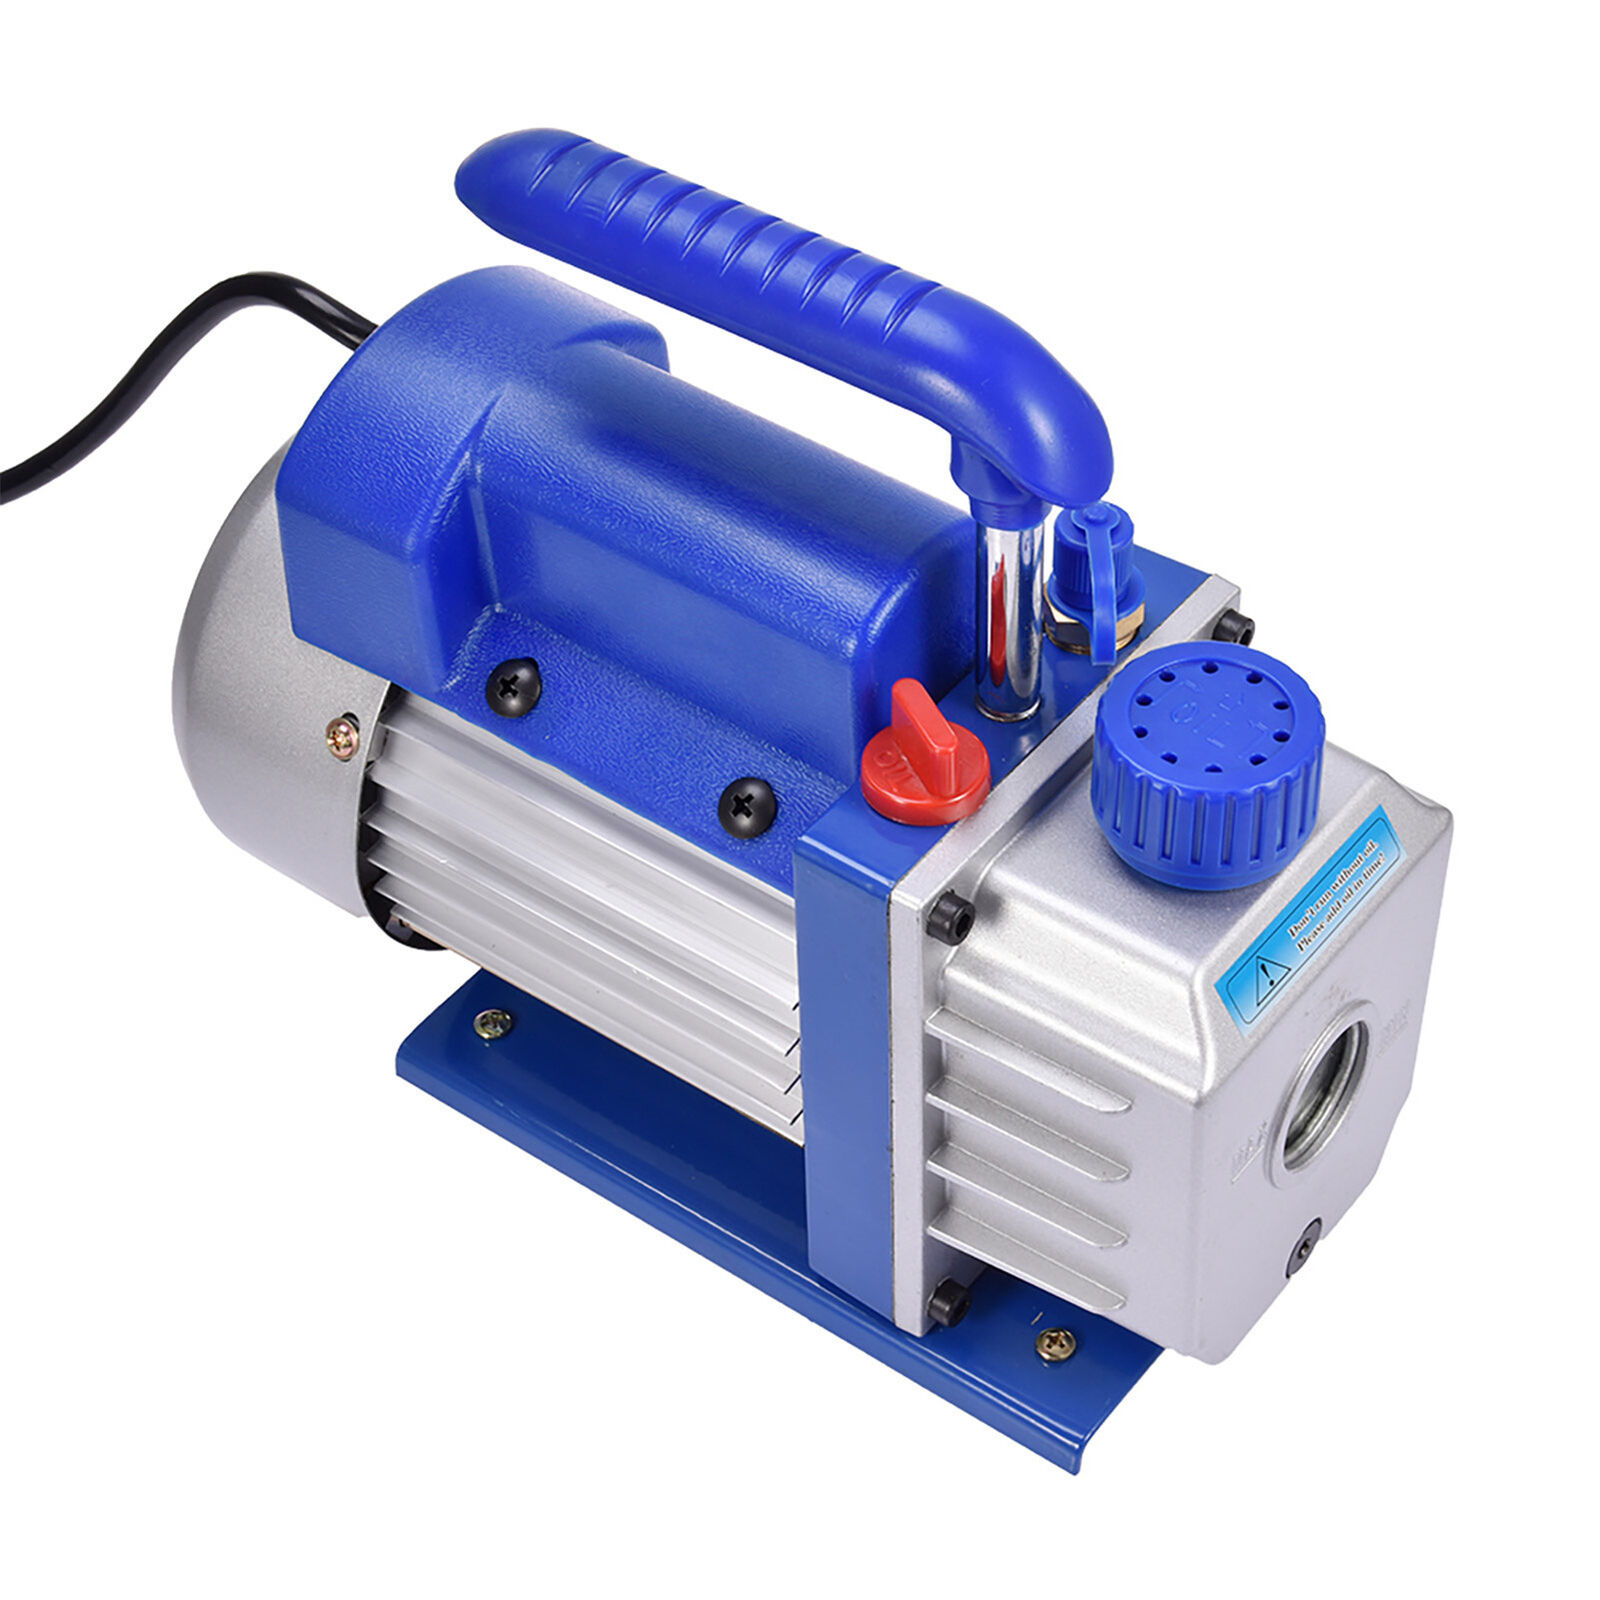 NEW 4CFM Vacuum Pump 110V HVAC Rotary Vane Air Conditioning Vacuum Pump Blue